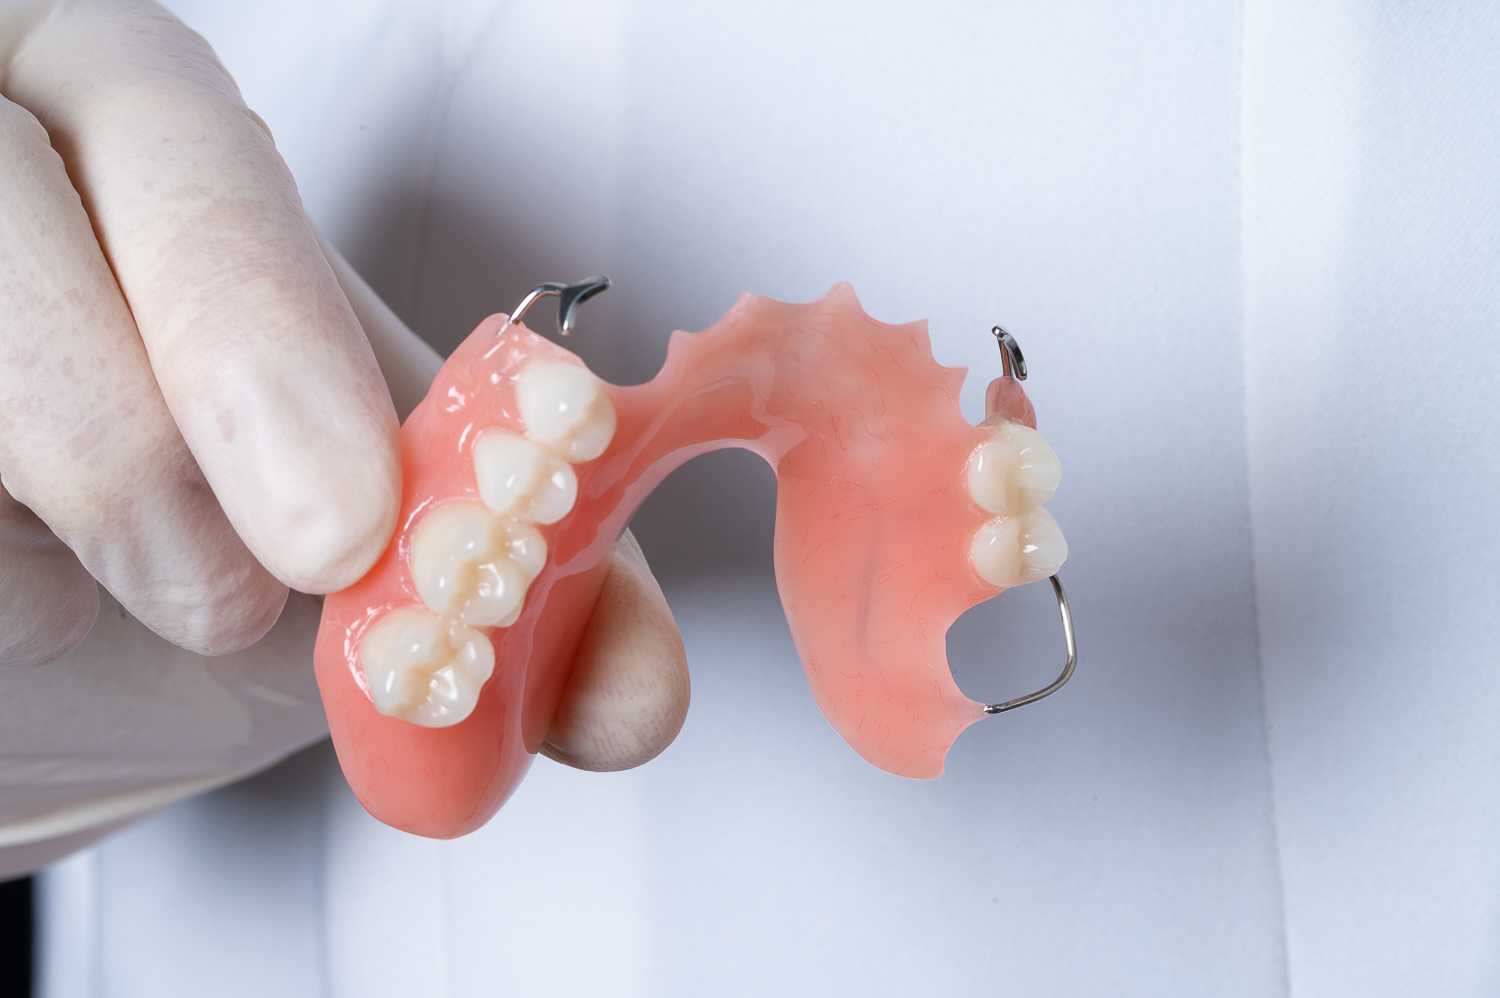 Где лучше решить возникшие проблемы по качественному протезированию зубов?